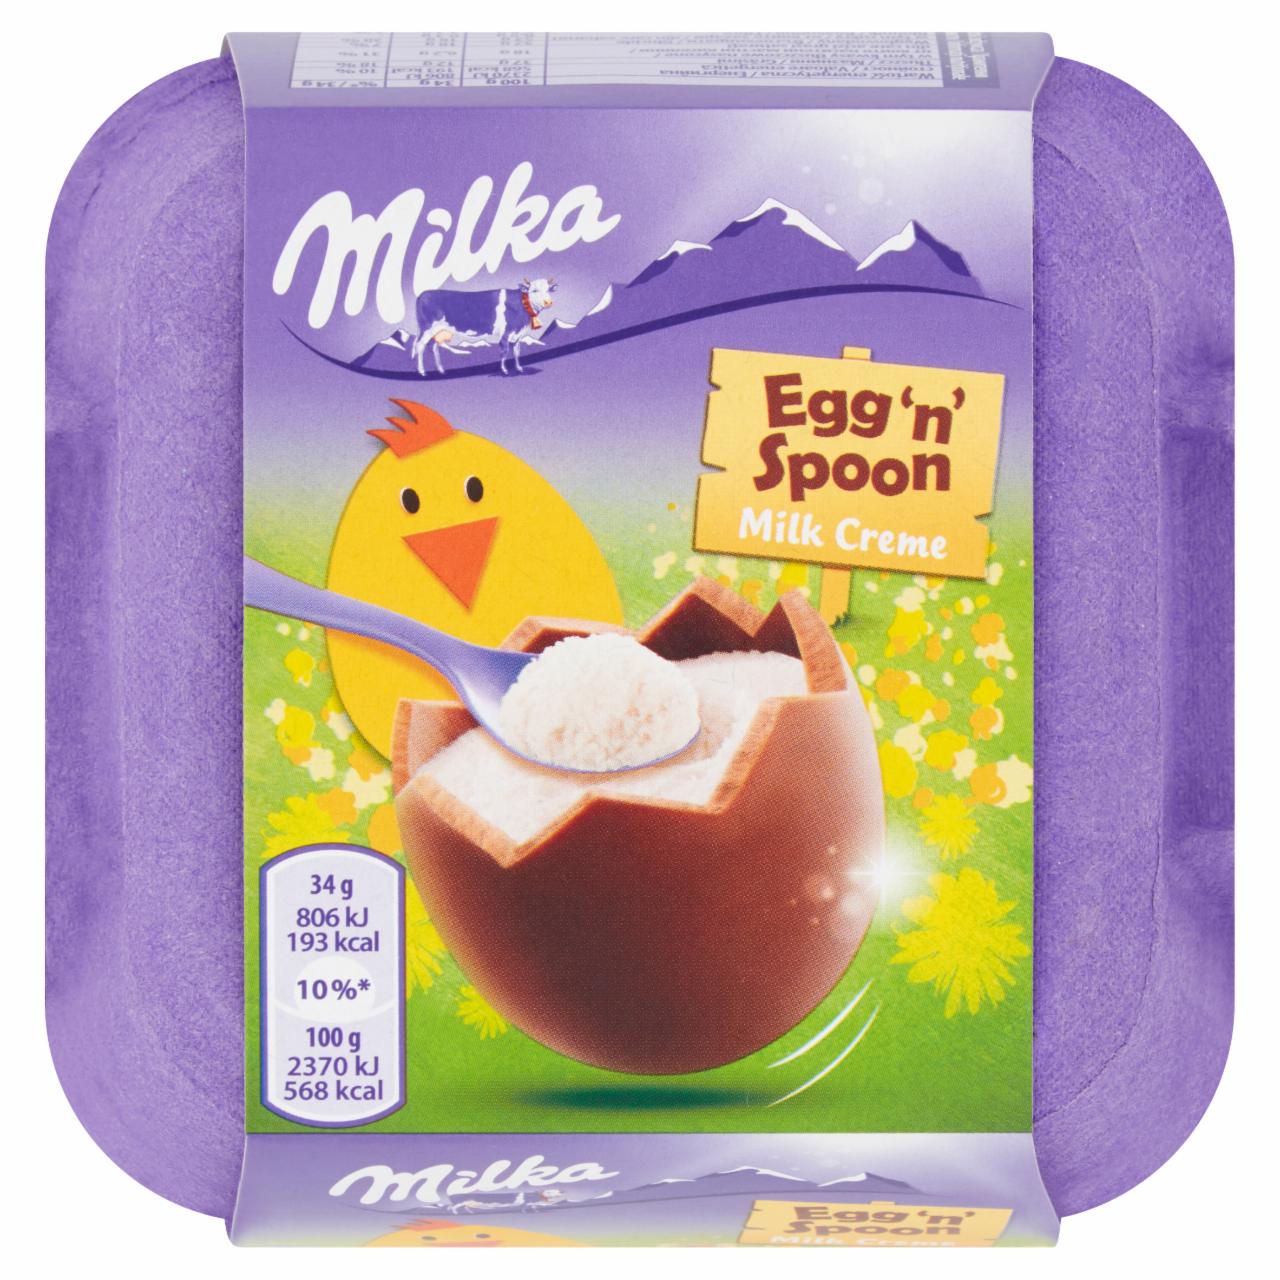 Zdjęcia - Milka Egg 'n' Spoon Milk Creme Czekolada mleczna 136 g (4 x 34 g)